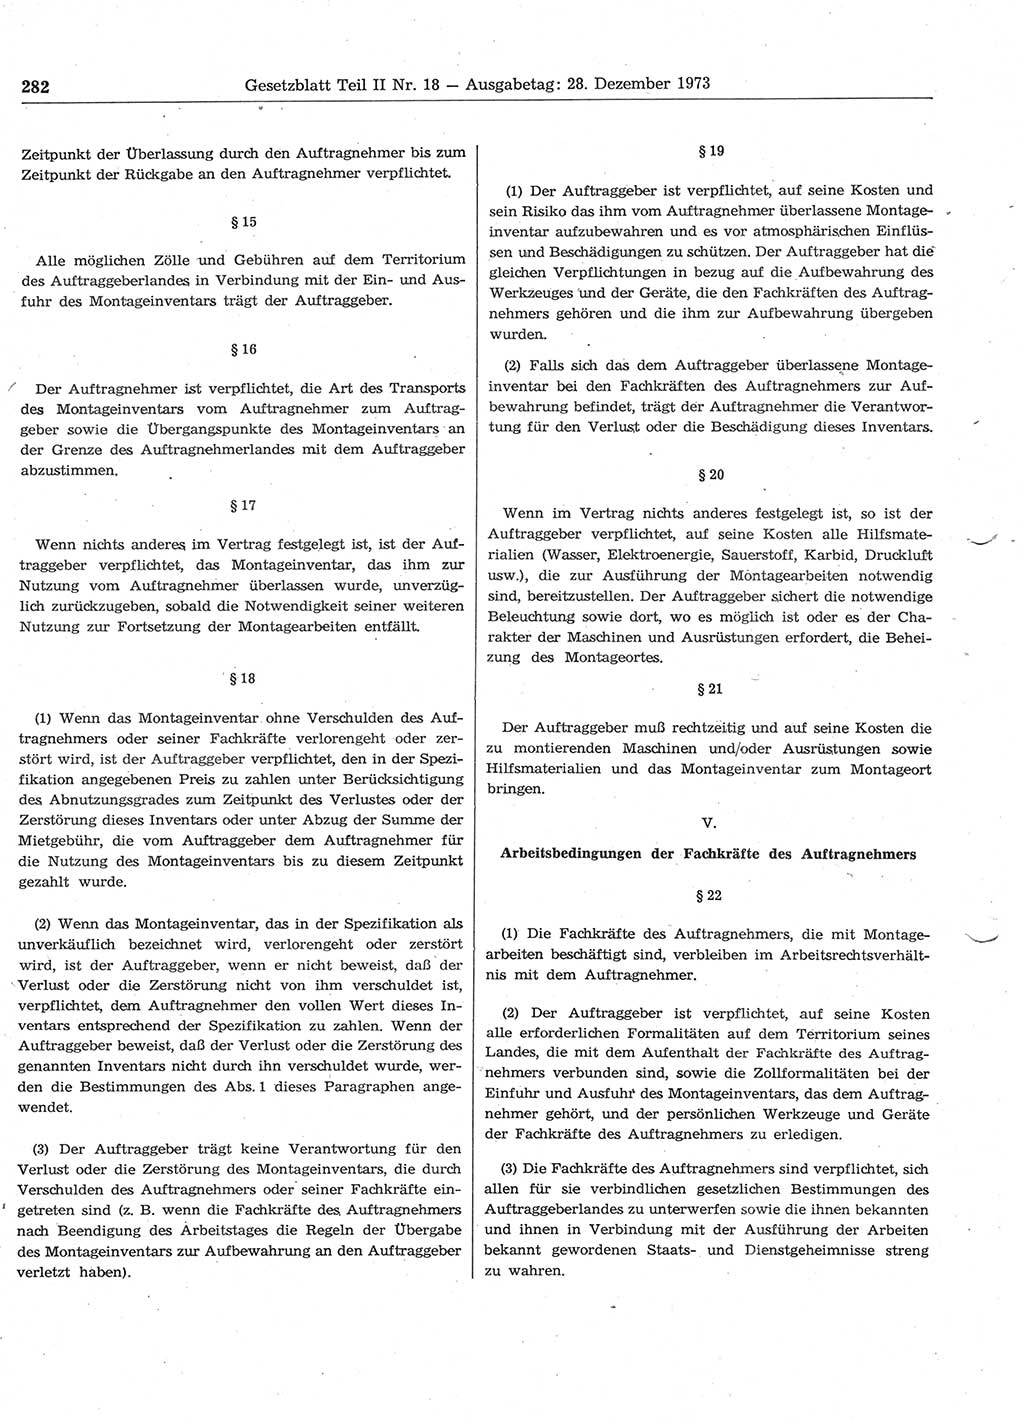 Gesetzblatt (GBl.) der Deutschen Demokratischen Republik (DDR) Teil ⅠⅠ 1973, Seite 282 (GBl. DDR ⅠⅠ 1973, S. 282)